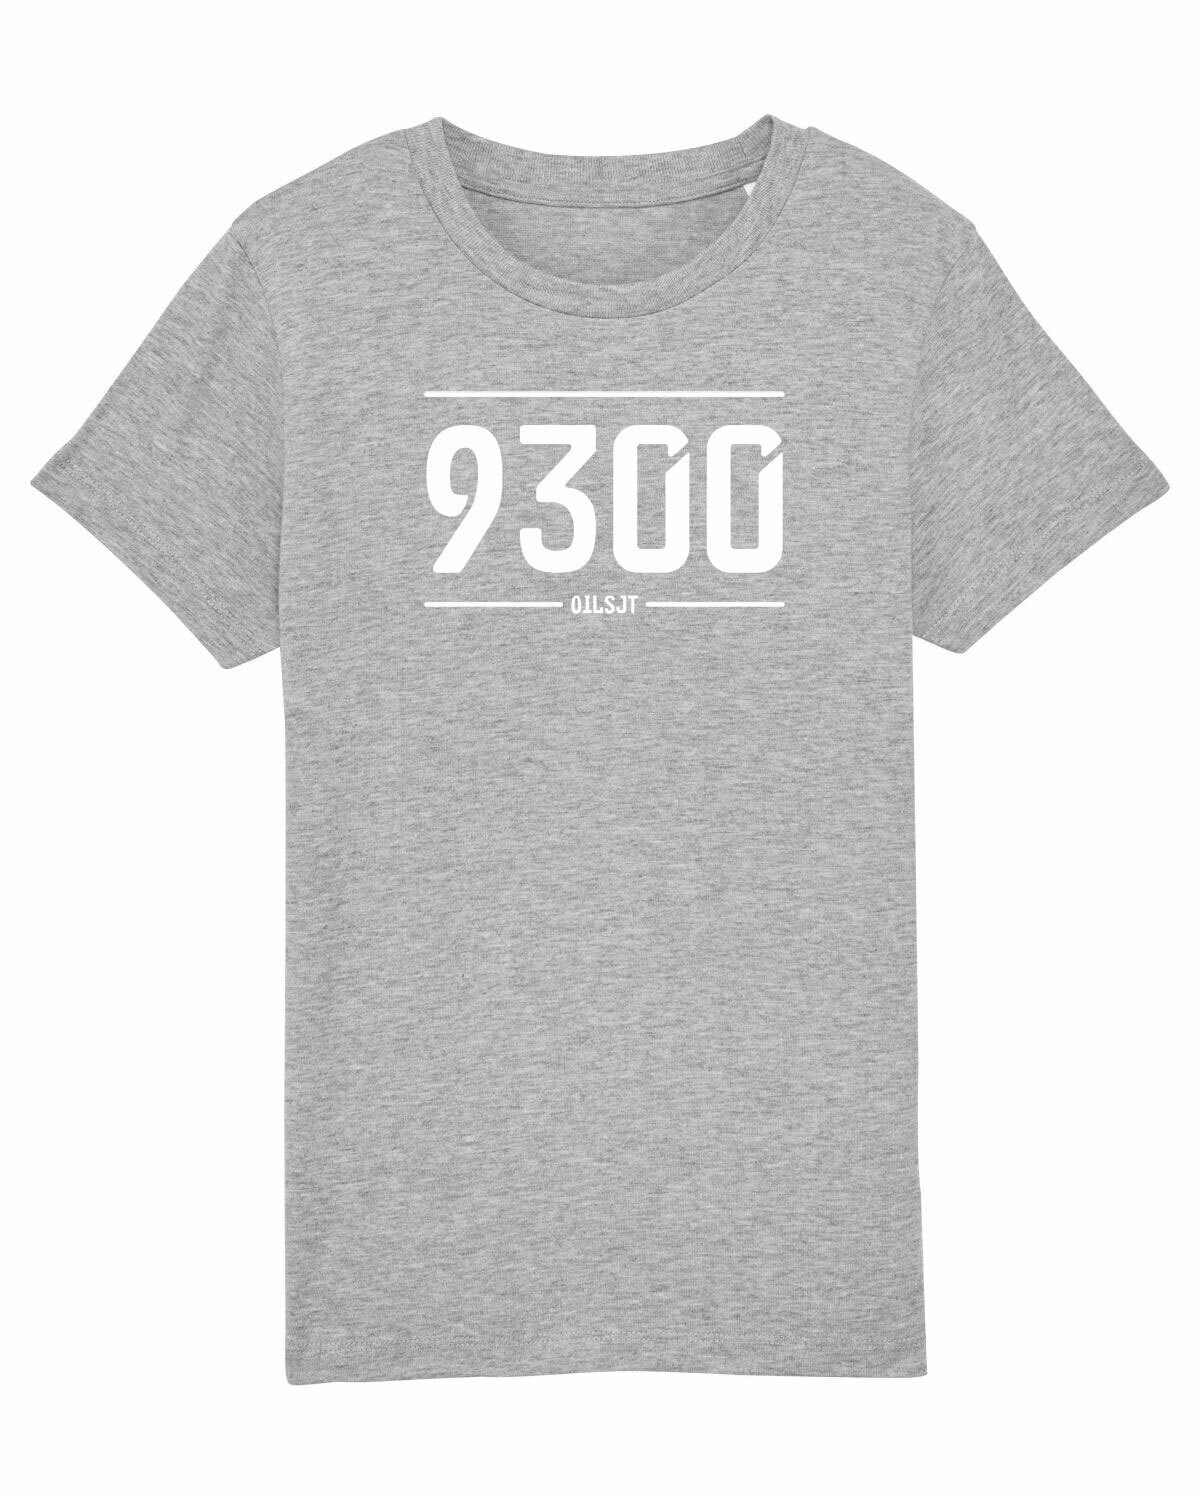 Kids T-shirt 9300